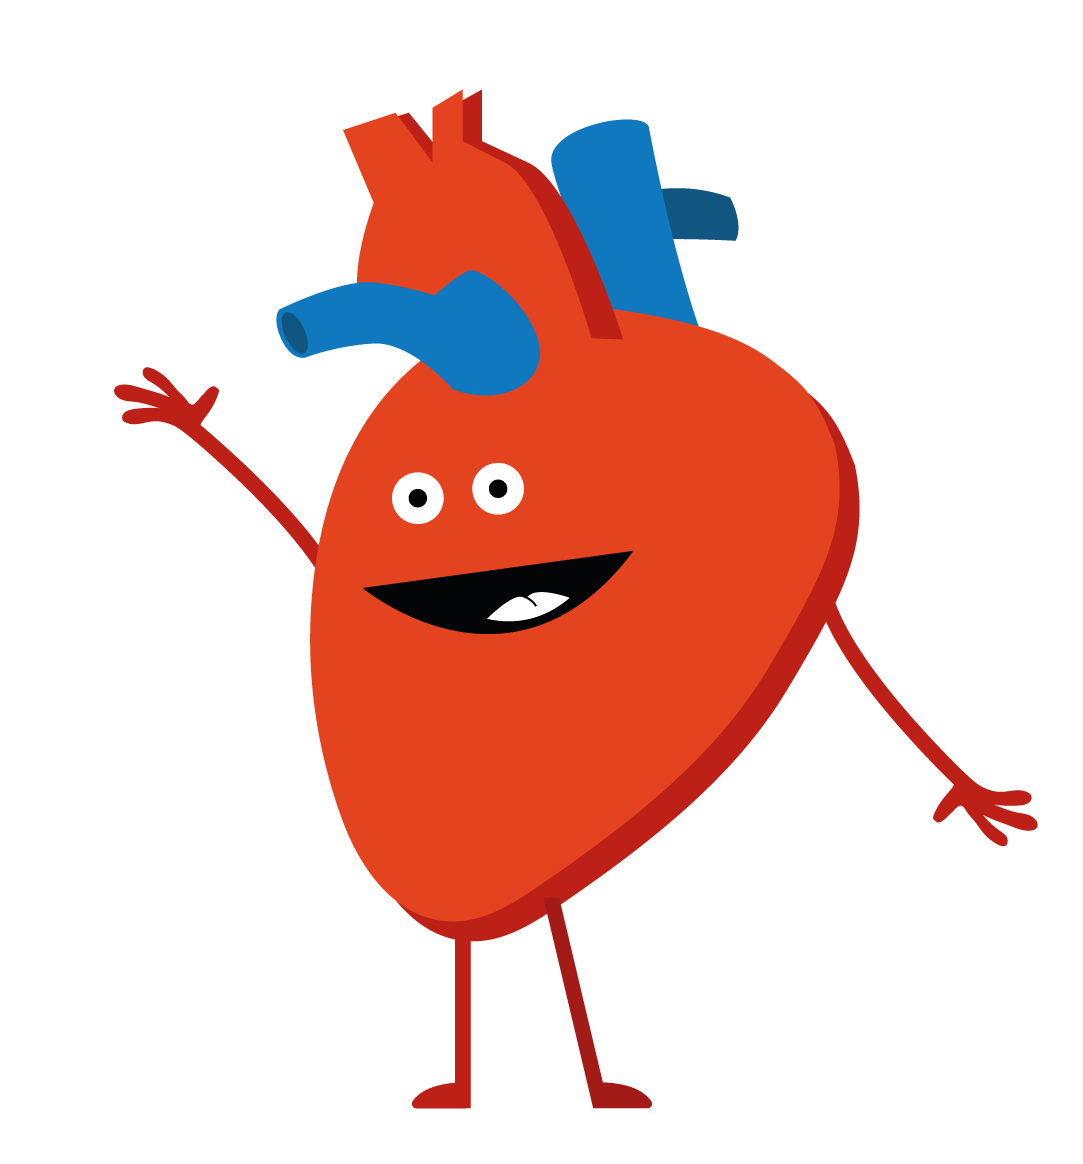 Hjärt-kärlsystemets huvuduppgift är att föra ut näringsämnen och syre till kroppens alla vävnader och organ.